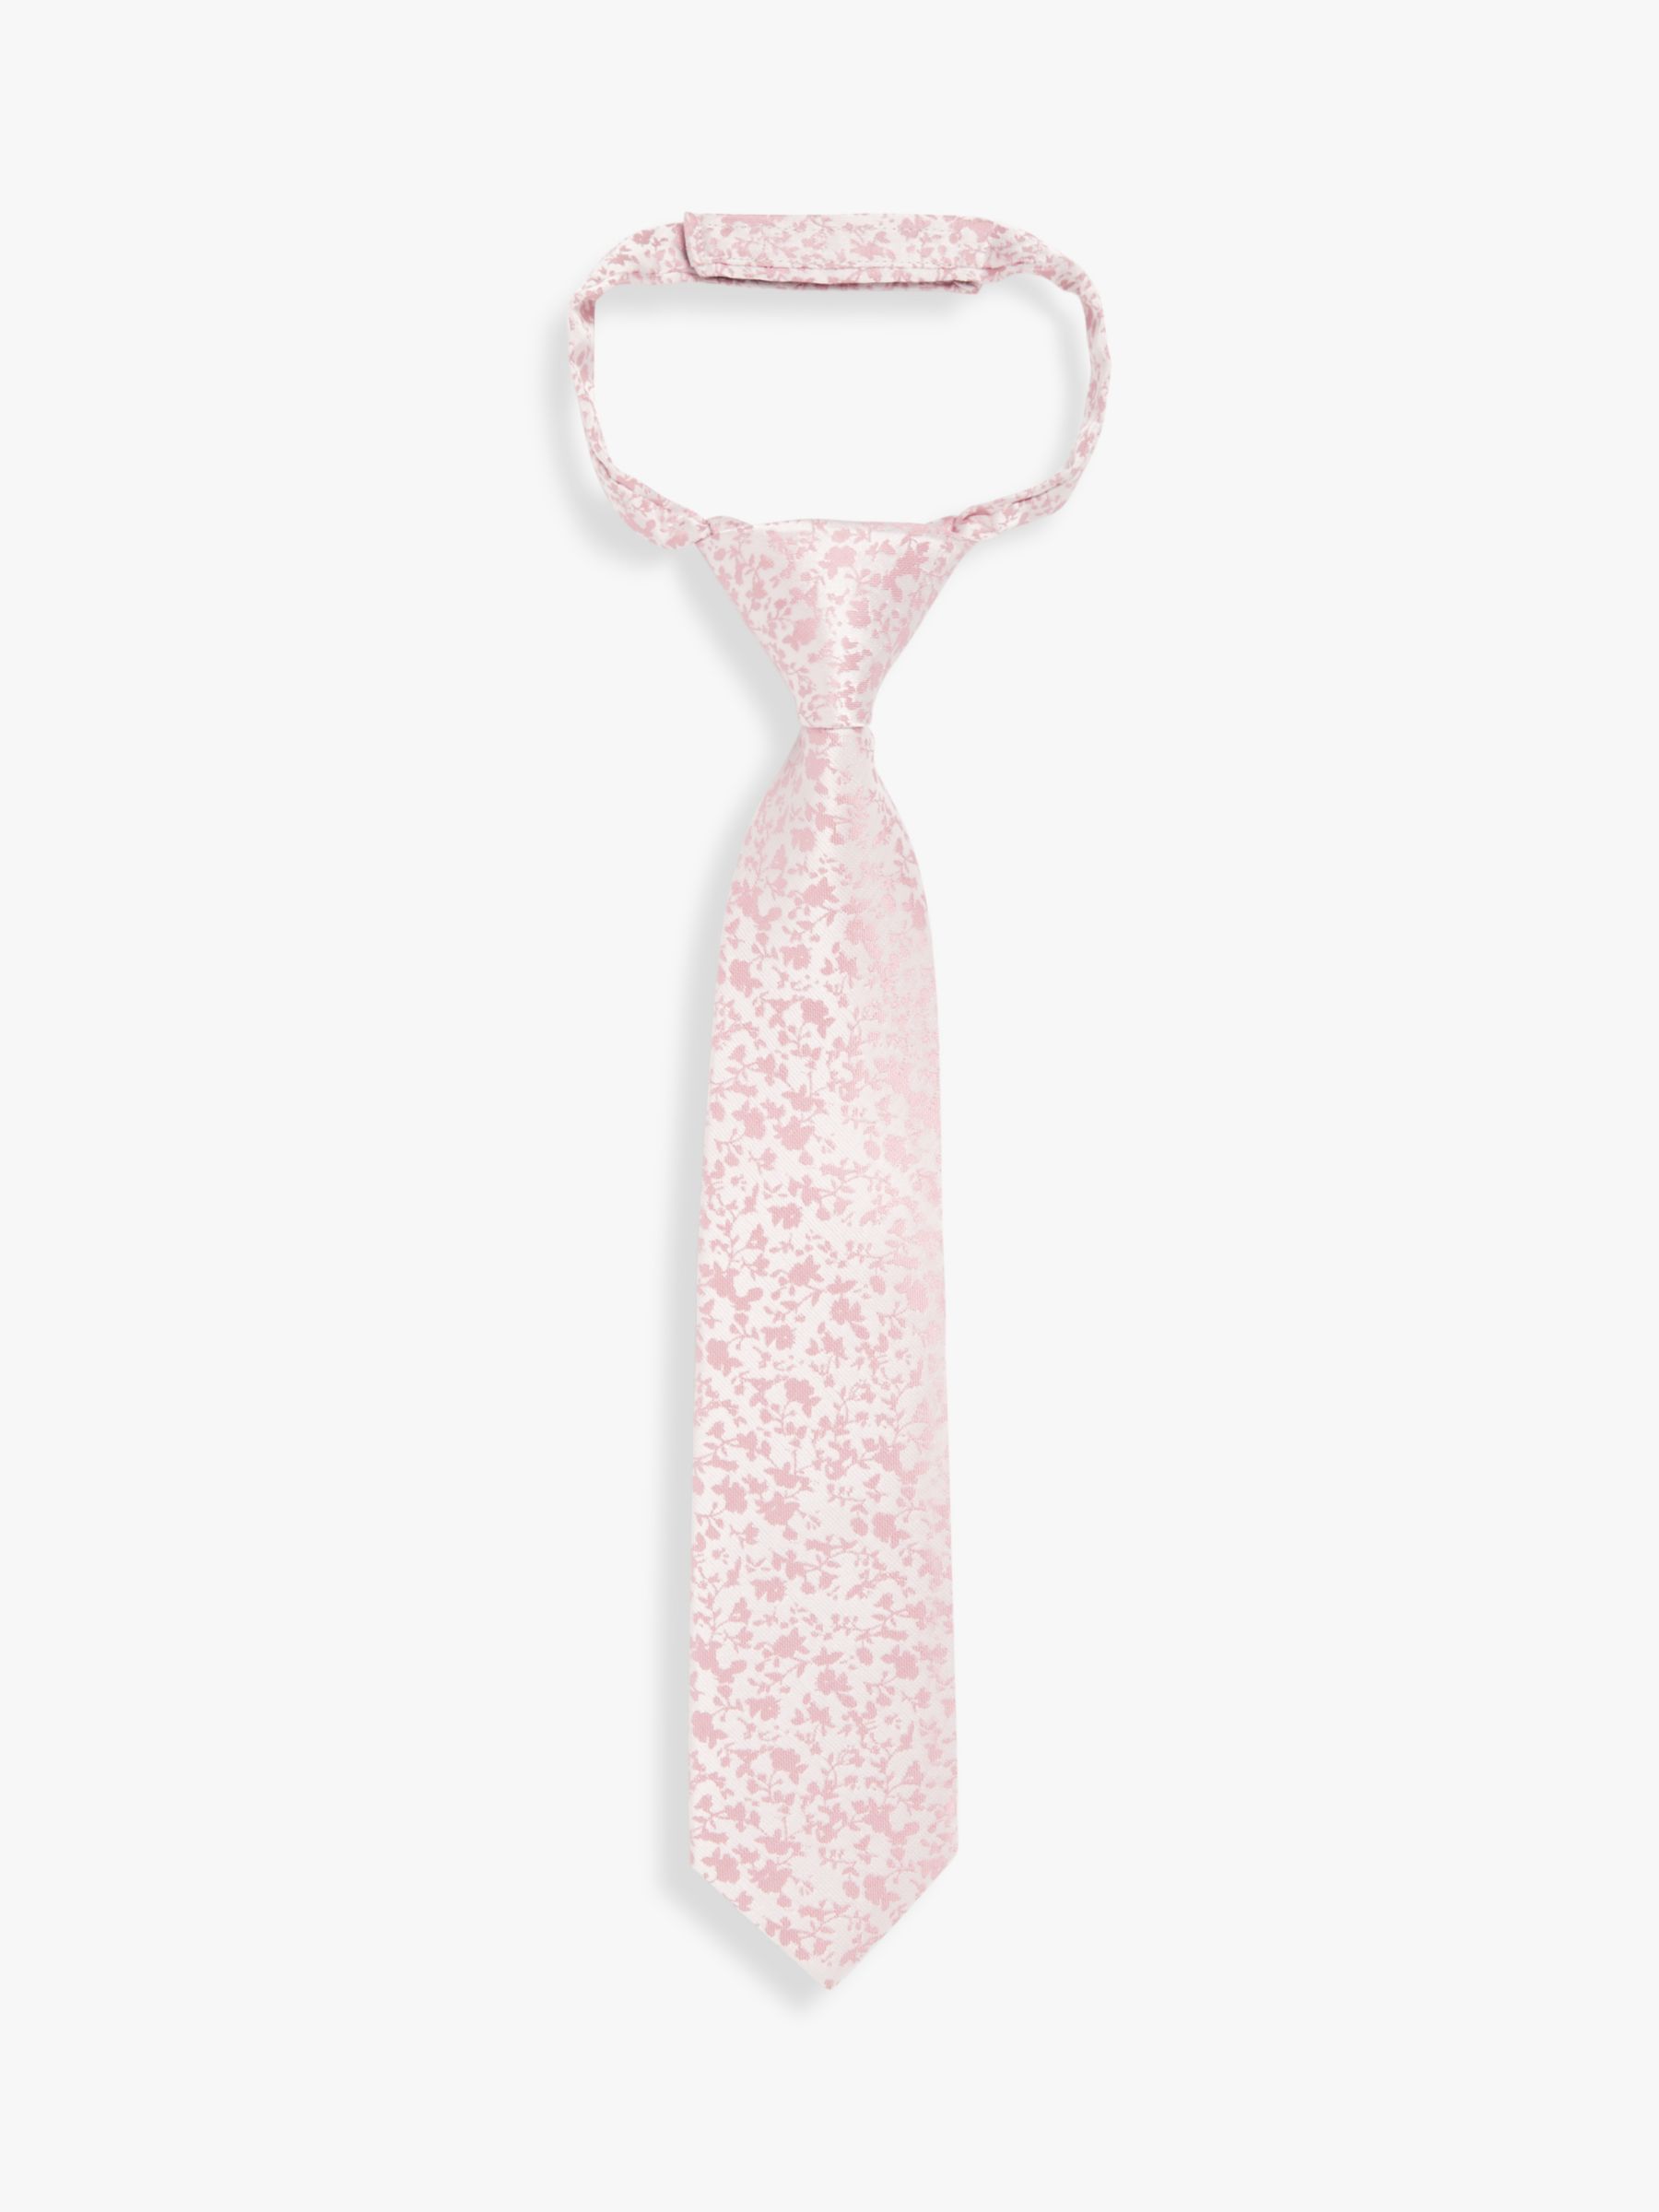 John Lewis Kids' Jacquard Floral Tie, Pink, S-M